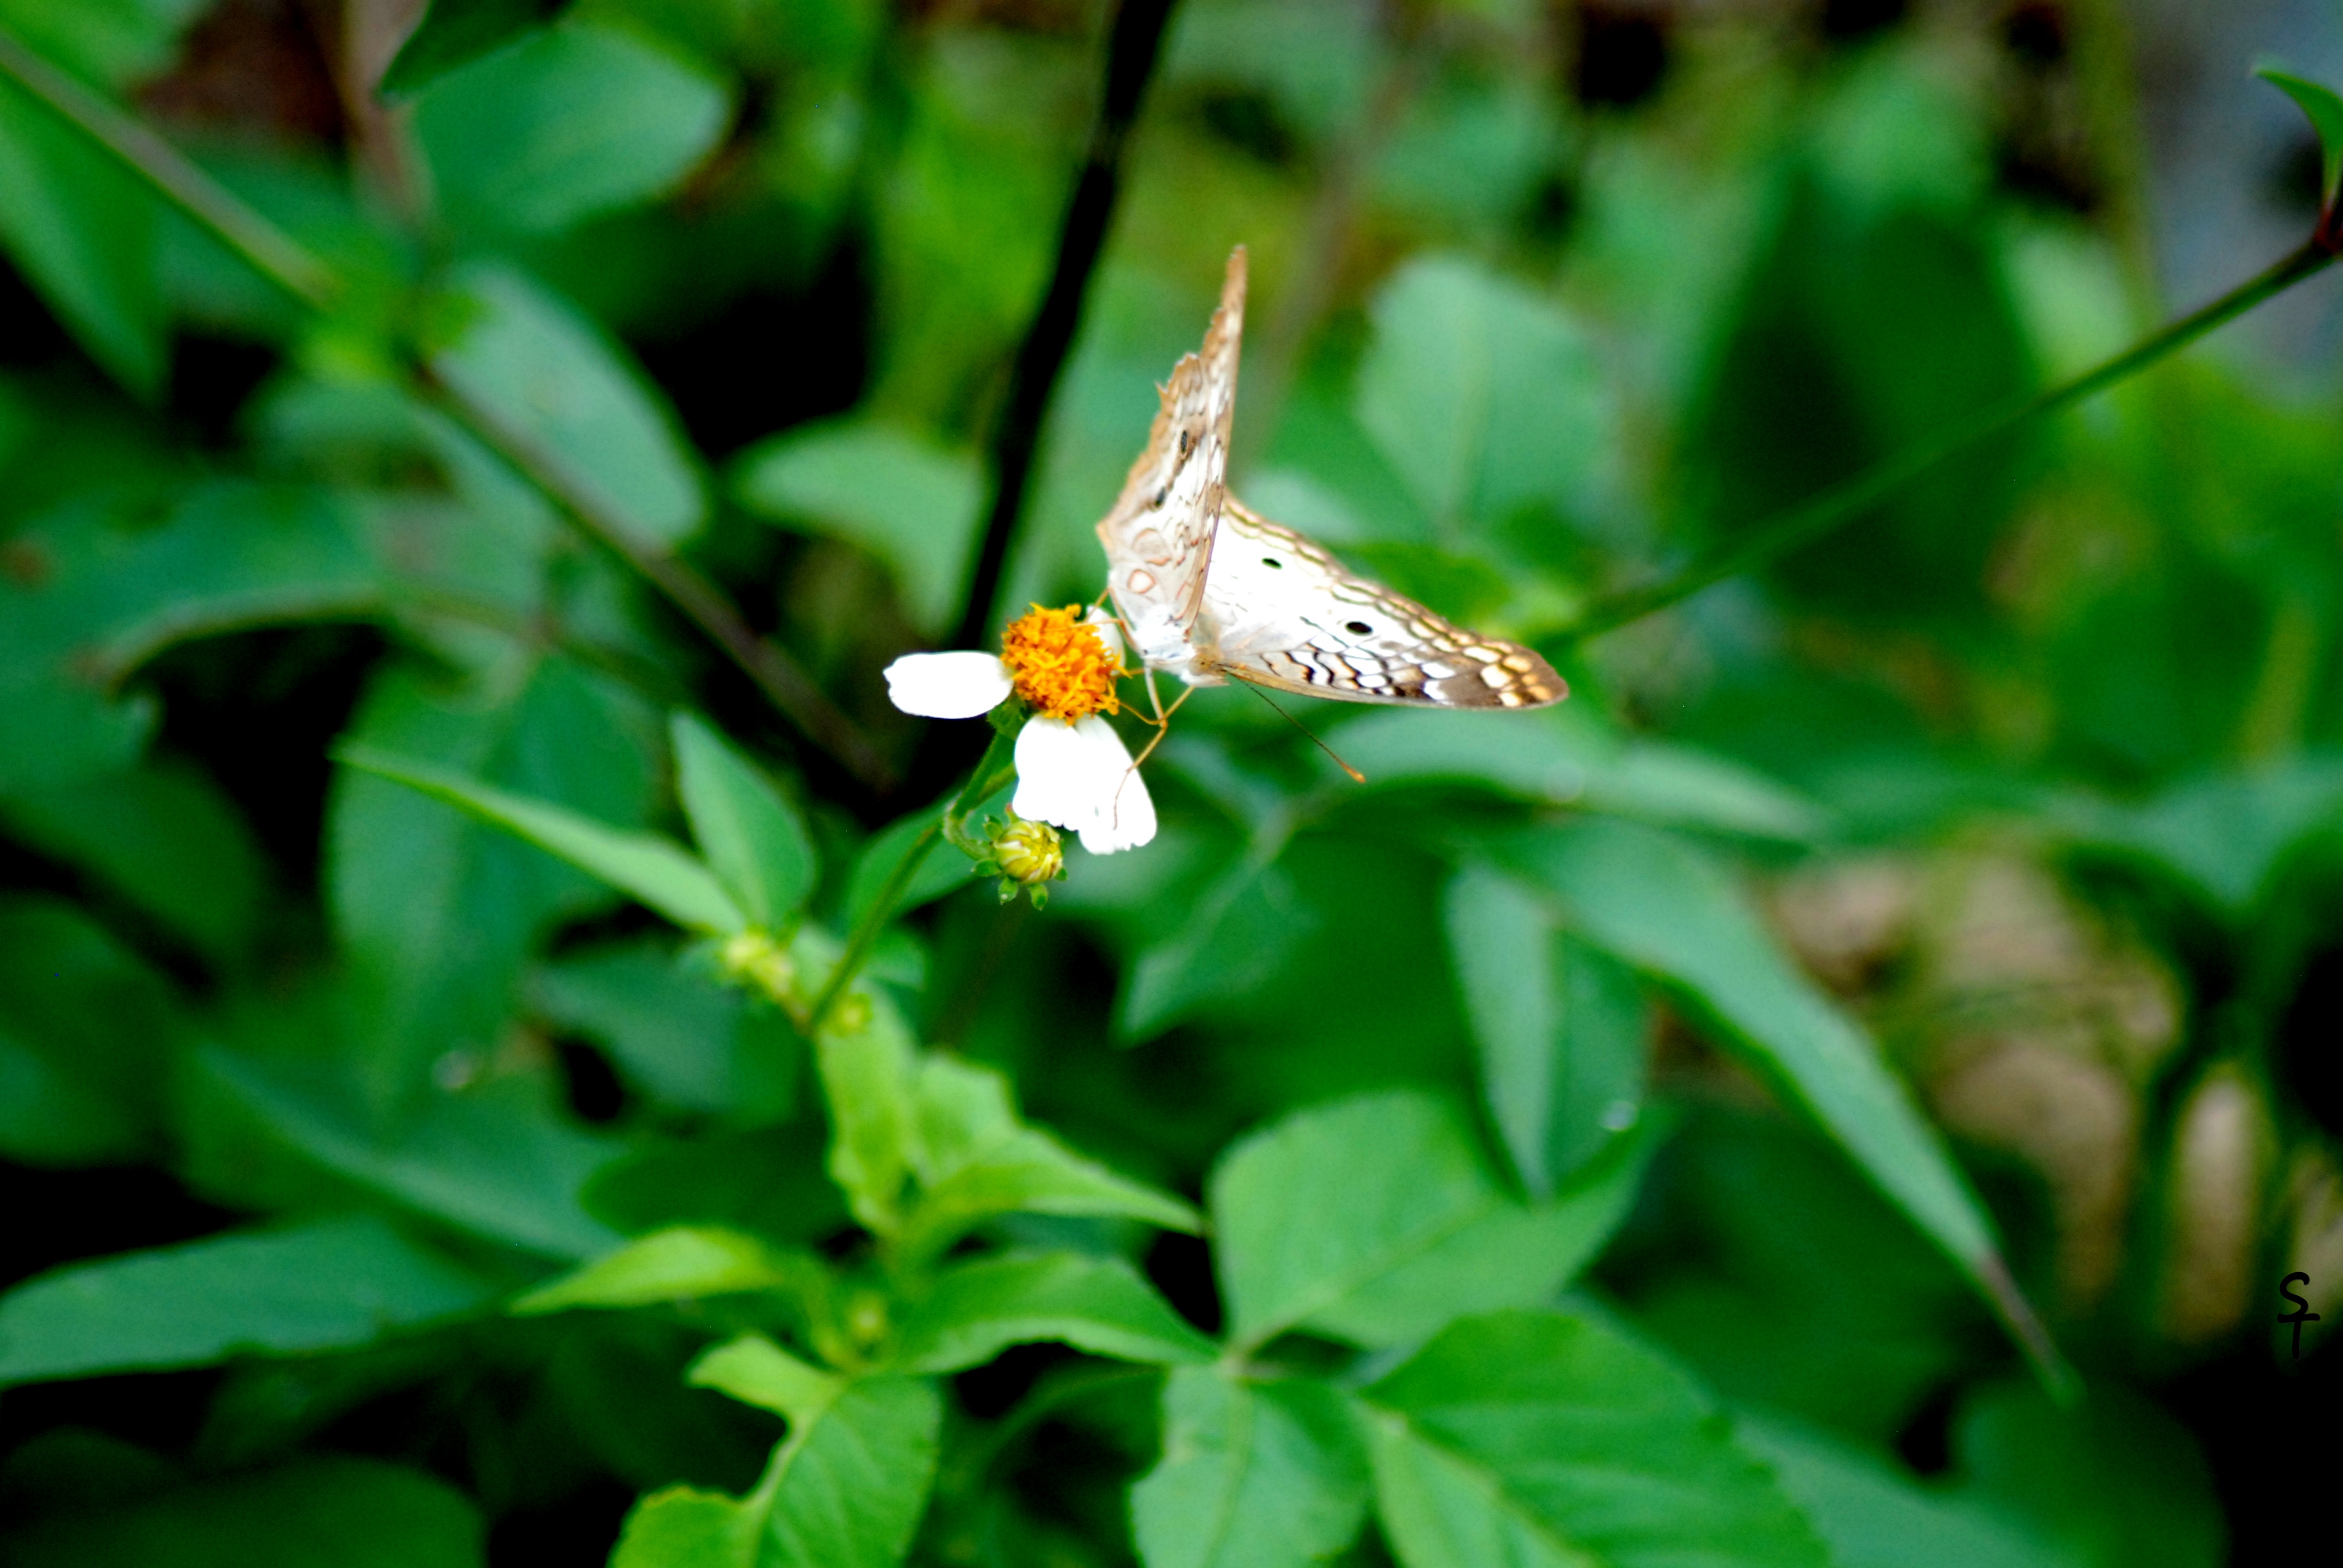 DSC_0687 - butterfly on flower